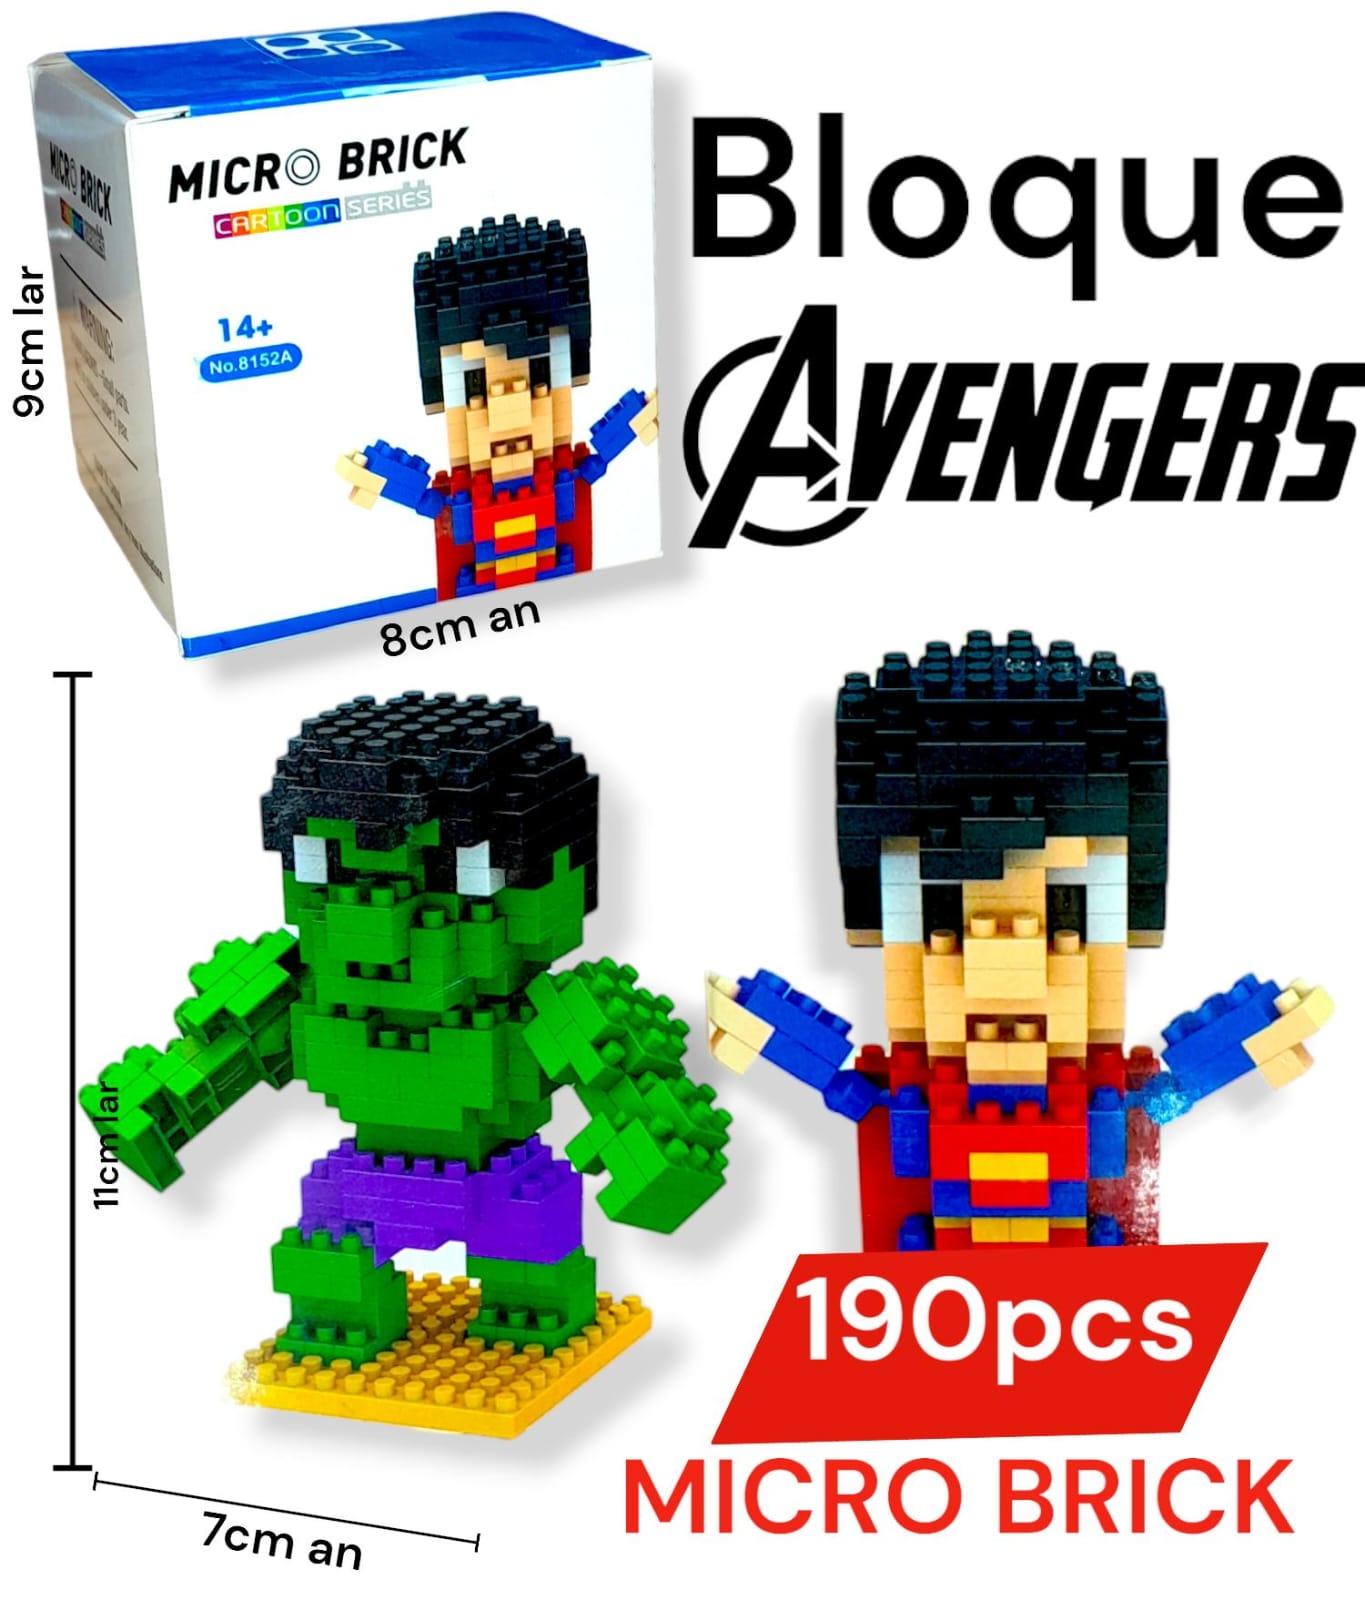 Bloque Avengers Micro Brick